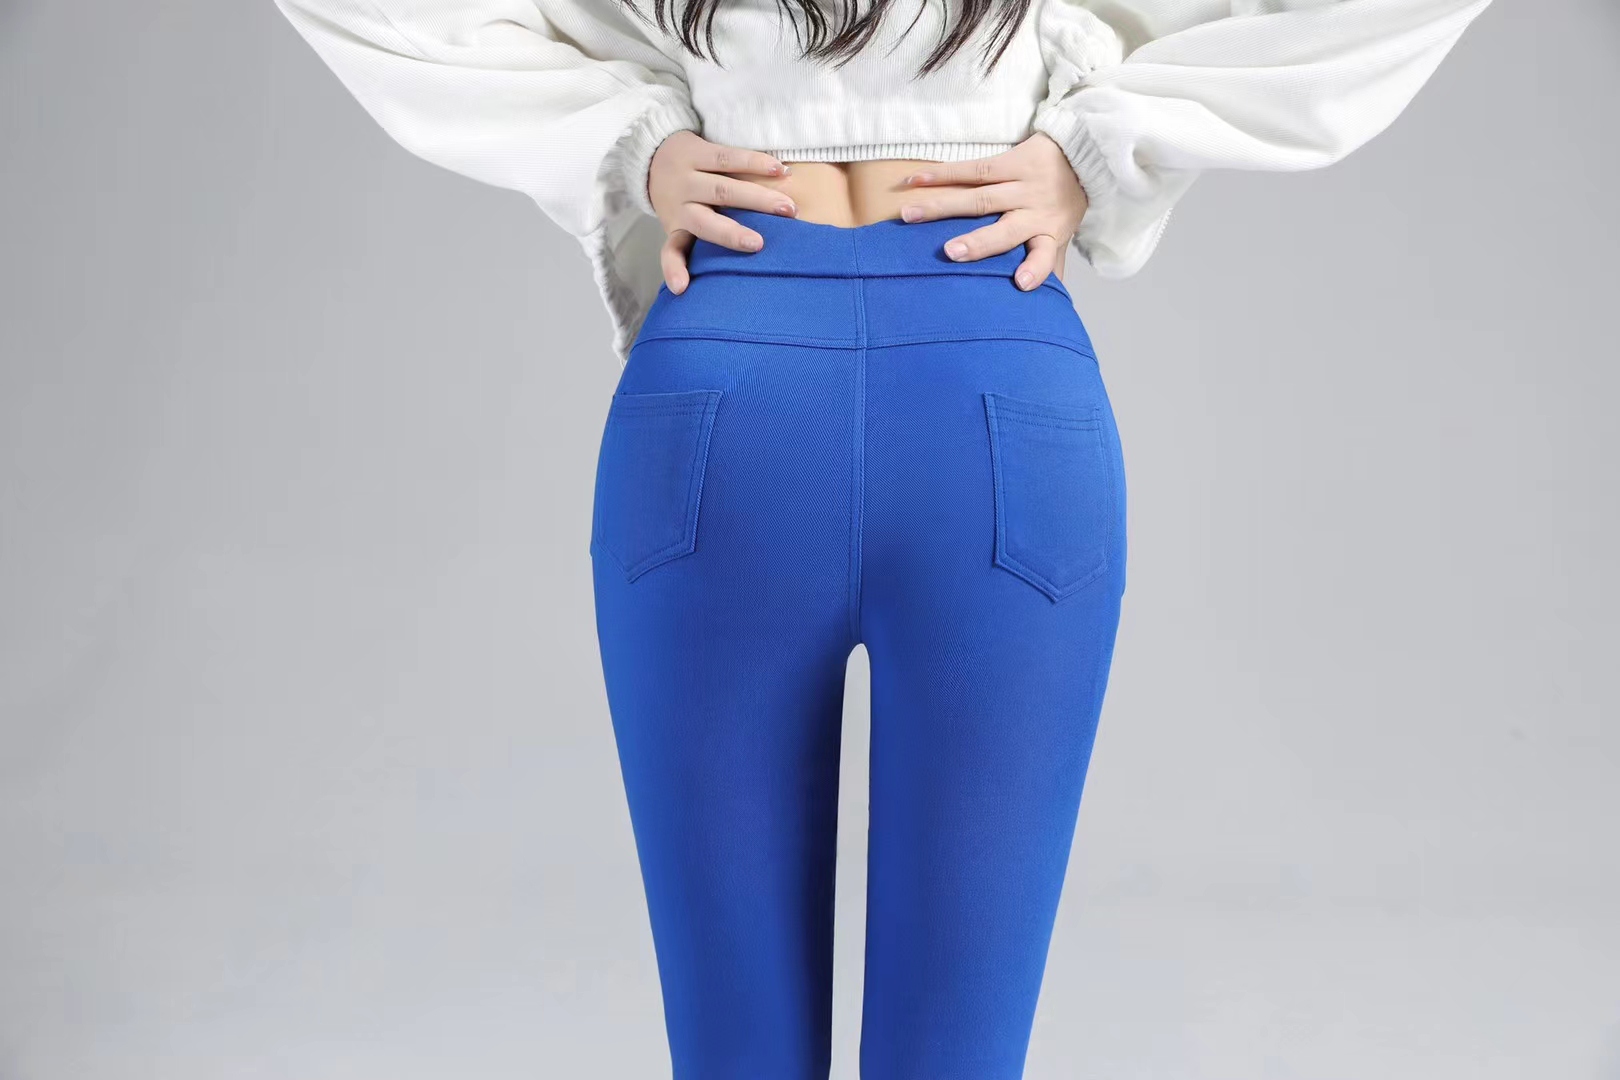 Ladies pants leggings blue trousers woman clothes jeans